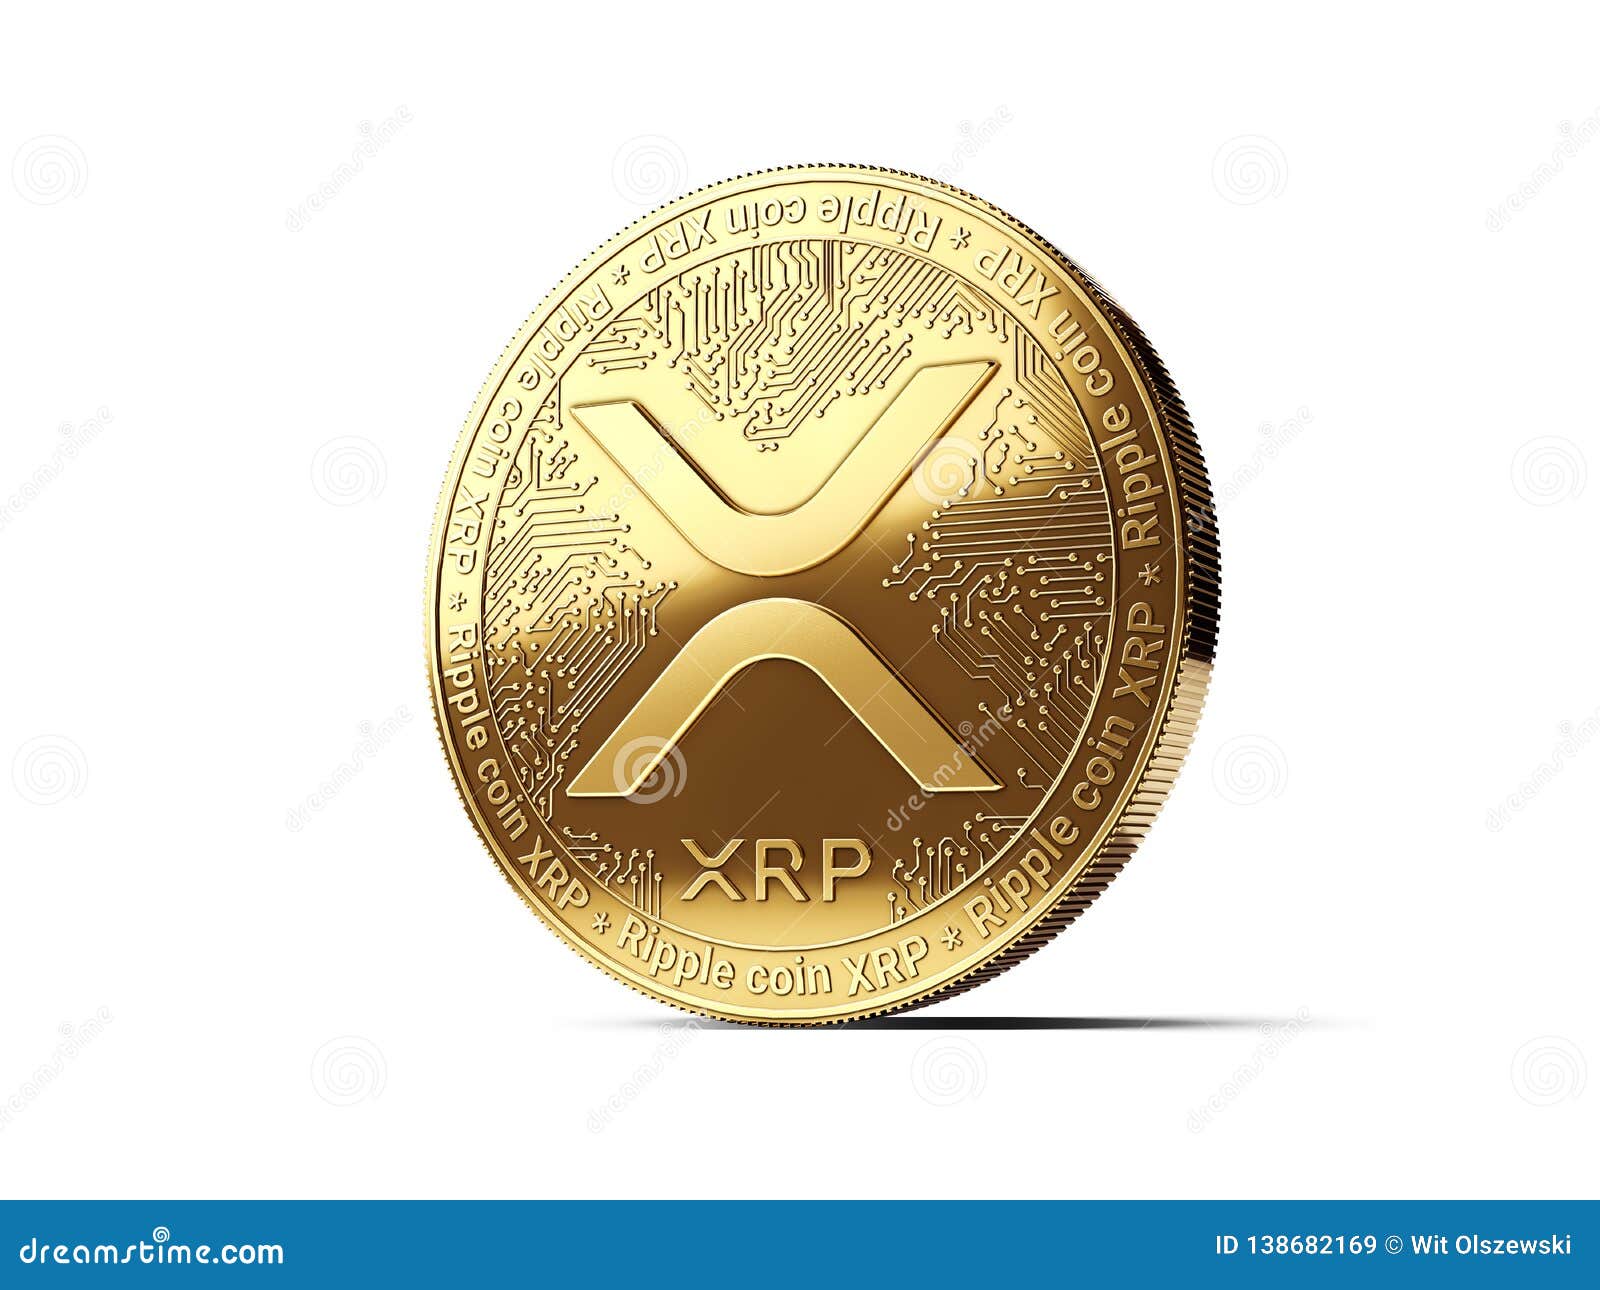 ripple xrp yra naujasis bitkoinas